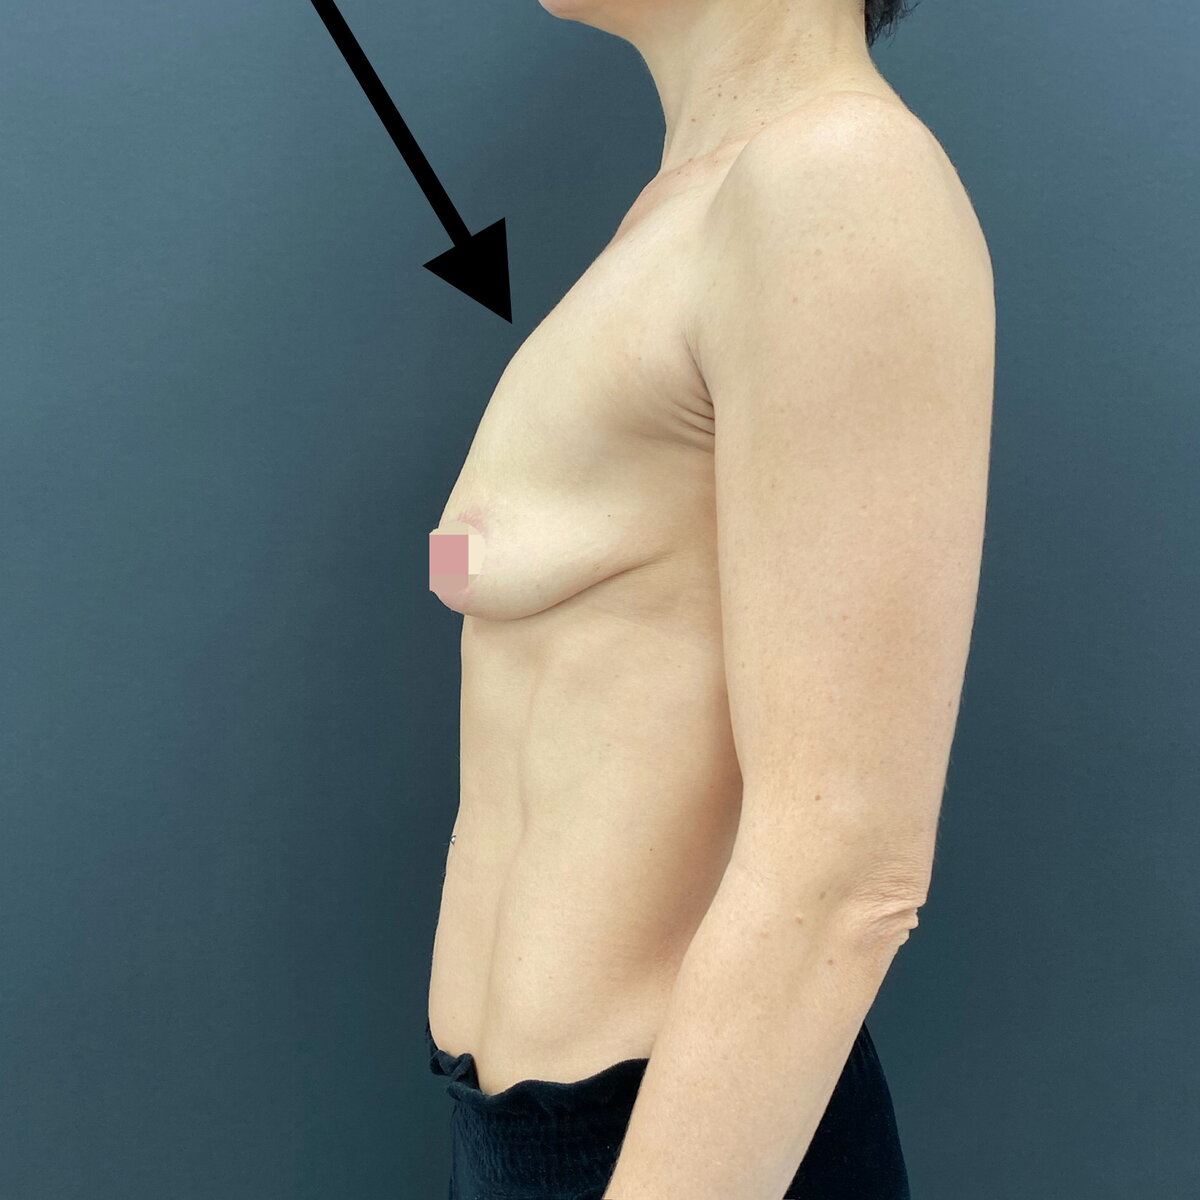 имплант силиконовый для груди фото 109